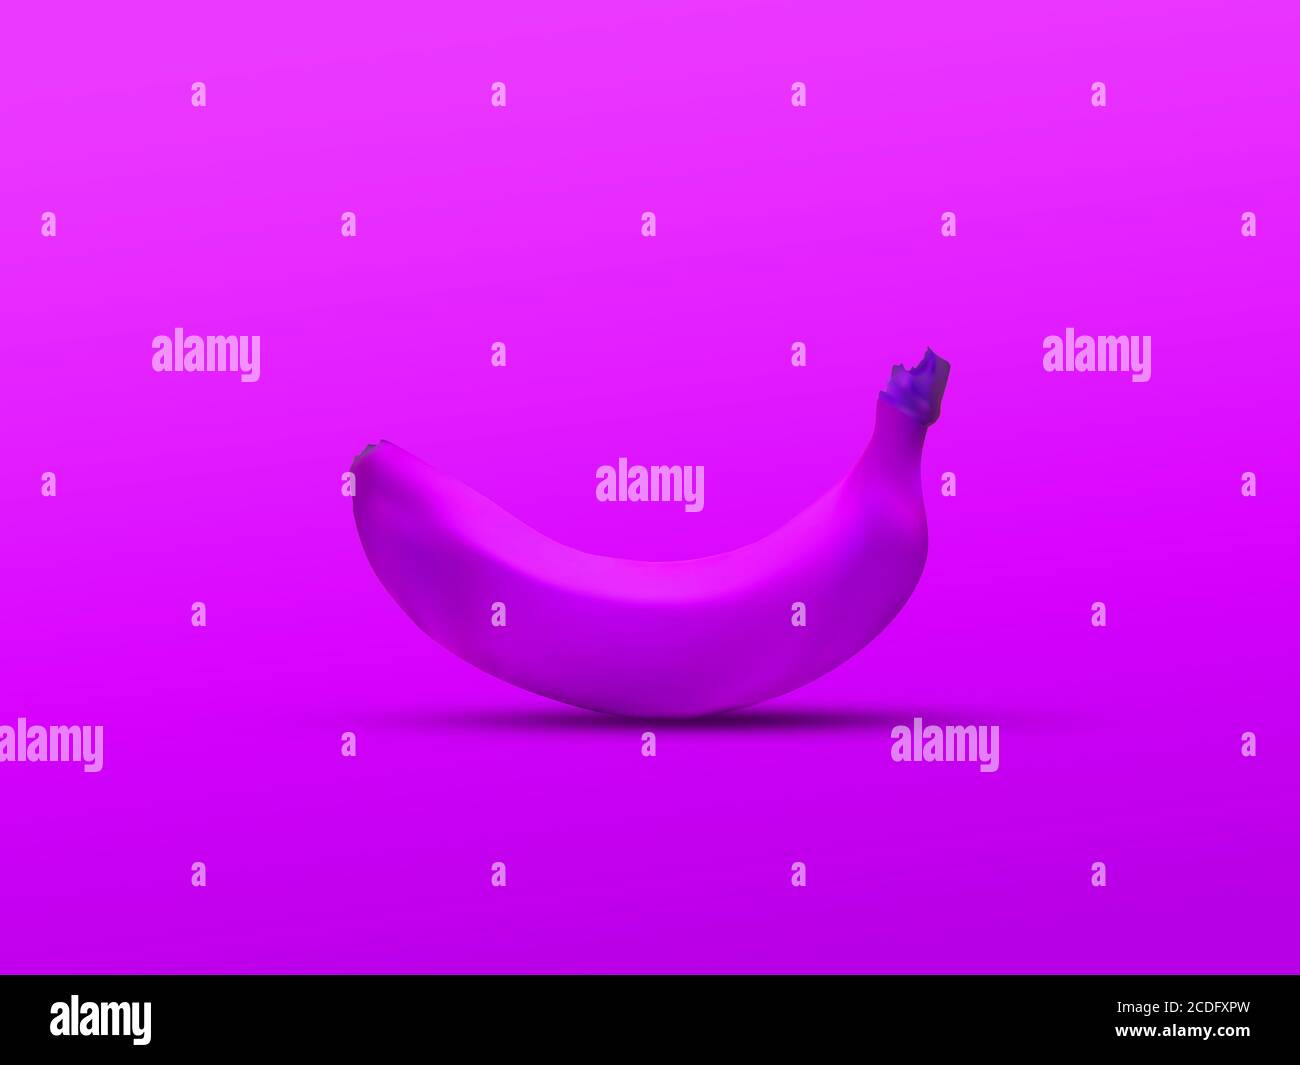 banana colorata singola isolata su sfondo viola: studio di colore chiaro una banana, visualizzazione 3d Foto Stock